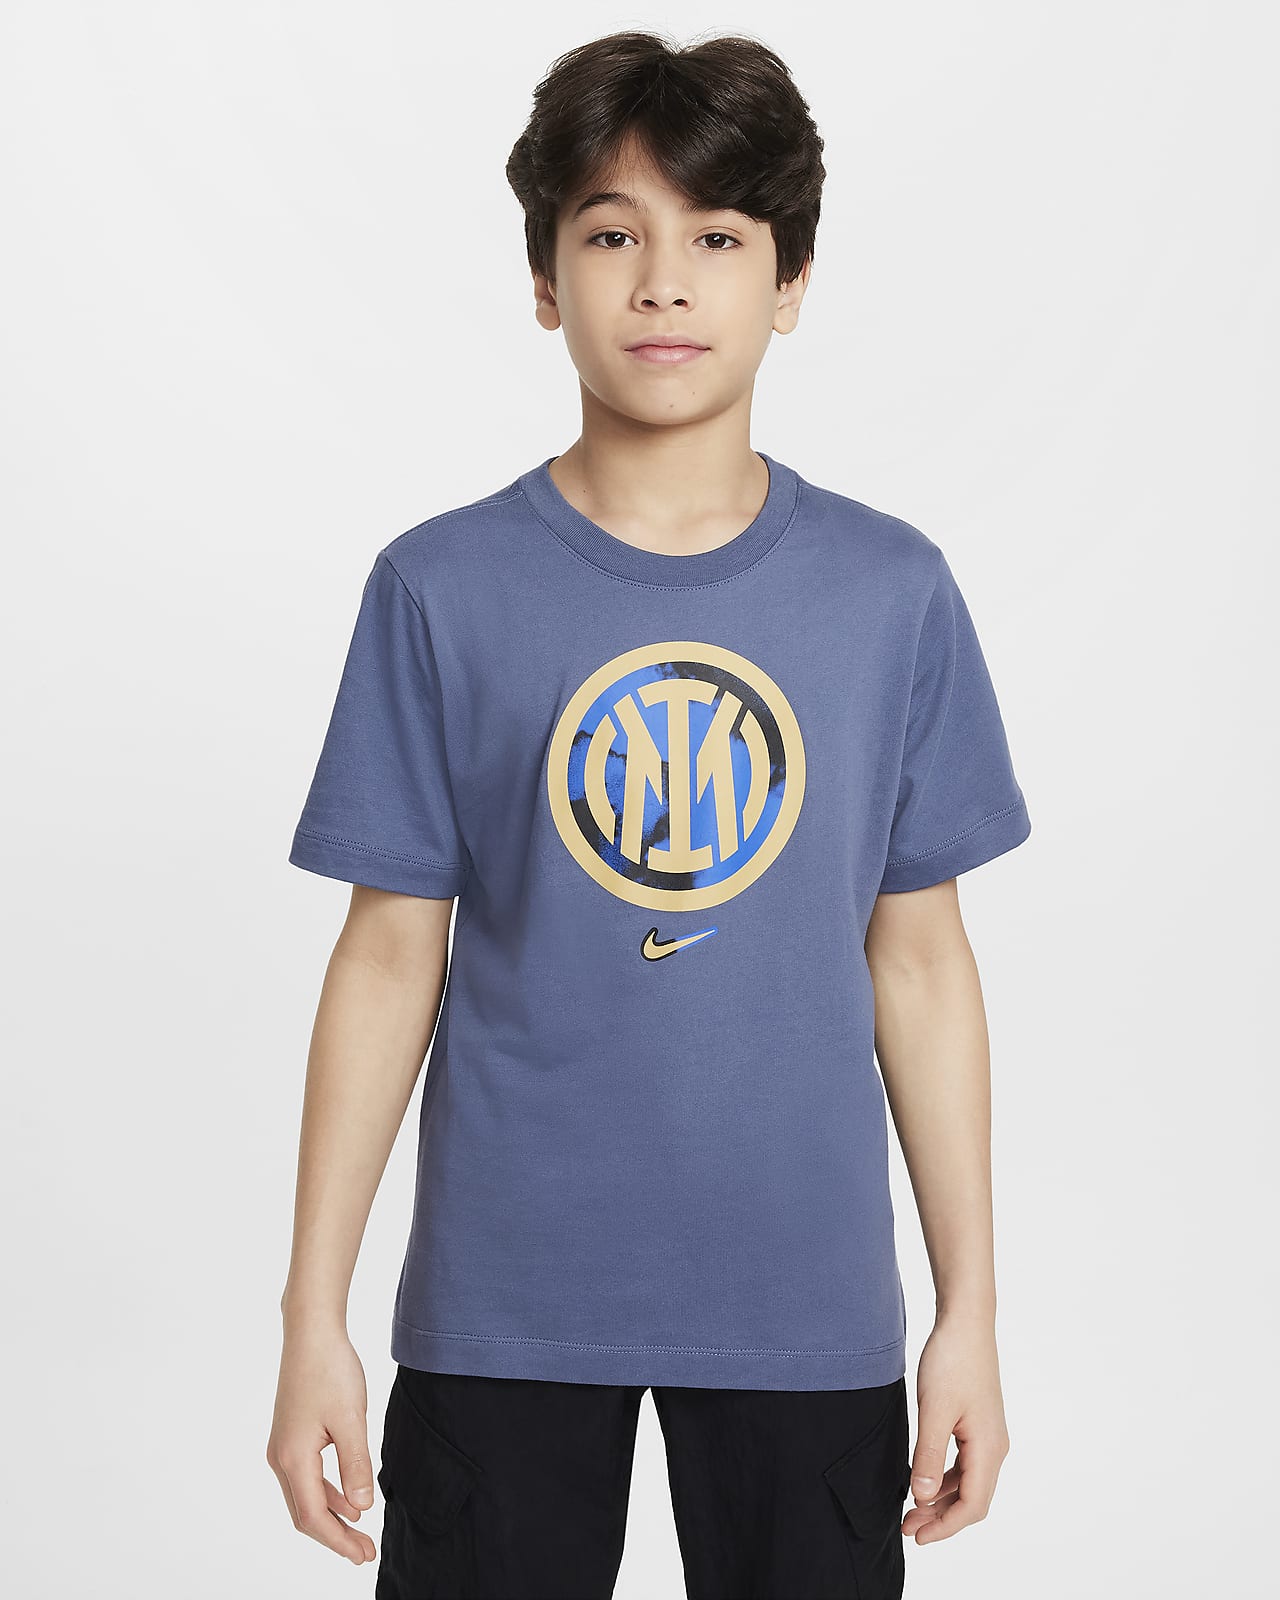 Inter Milan Older Kids' Nike Football T-Shirt